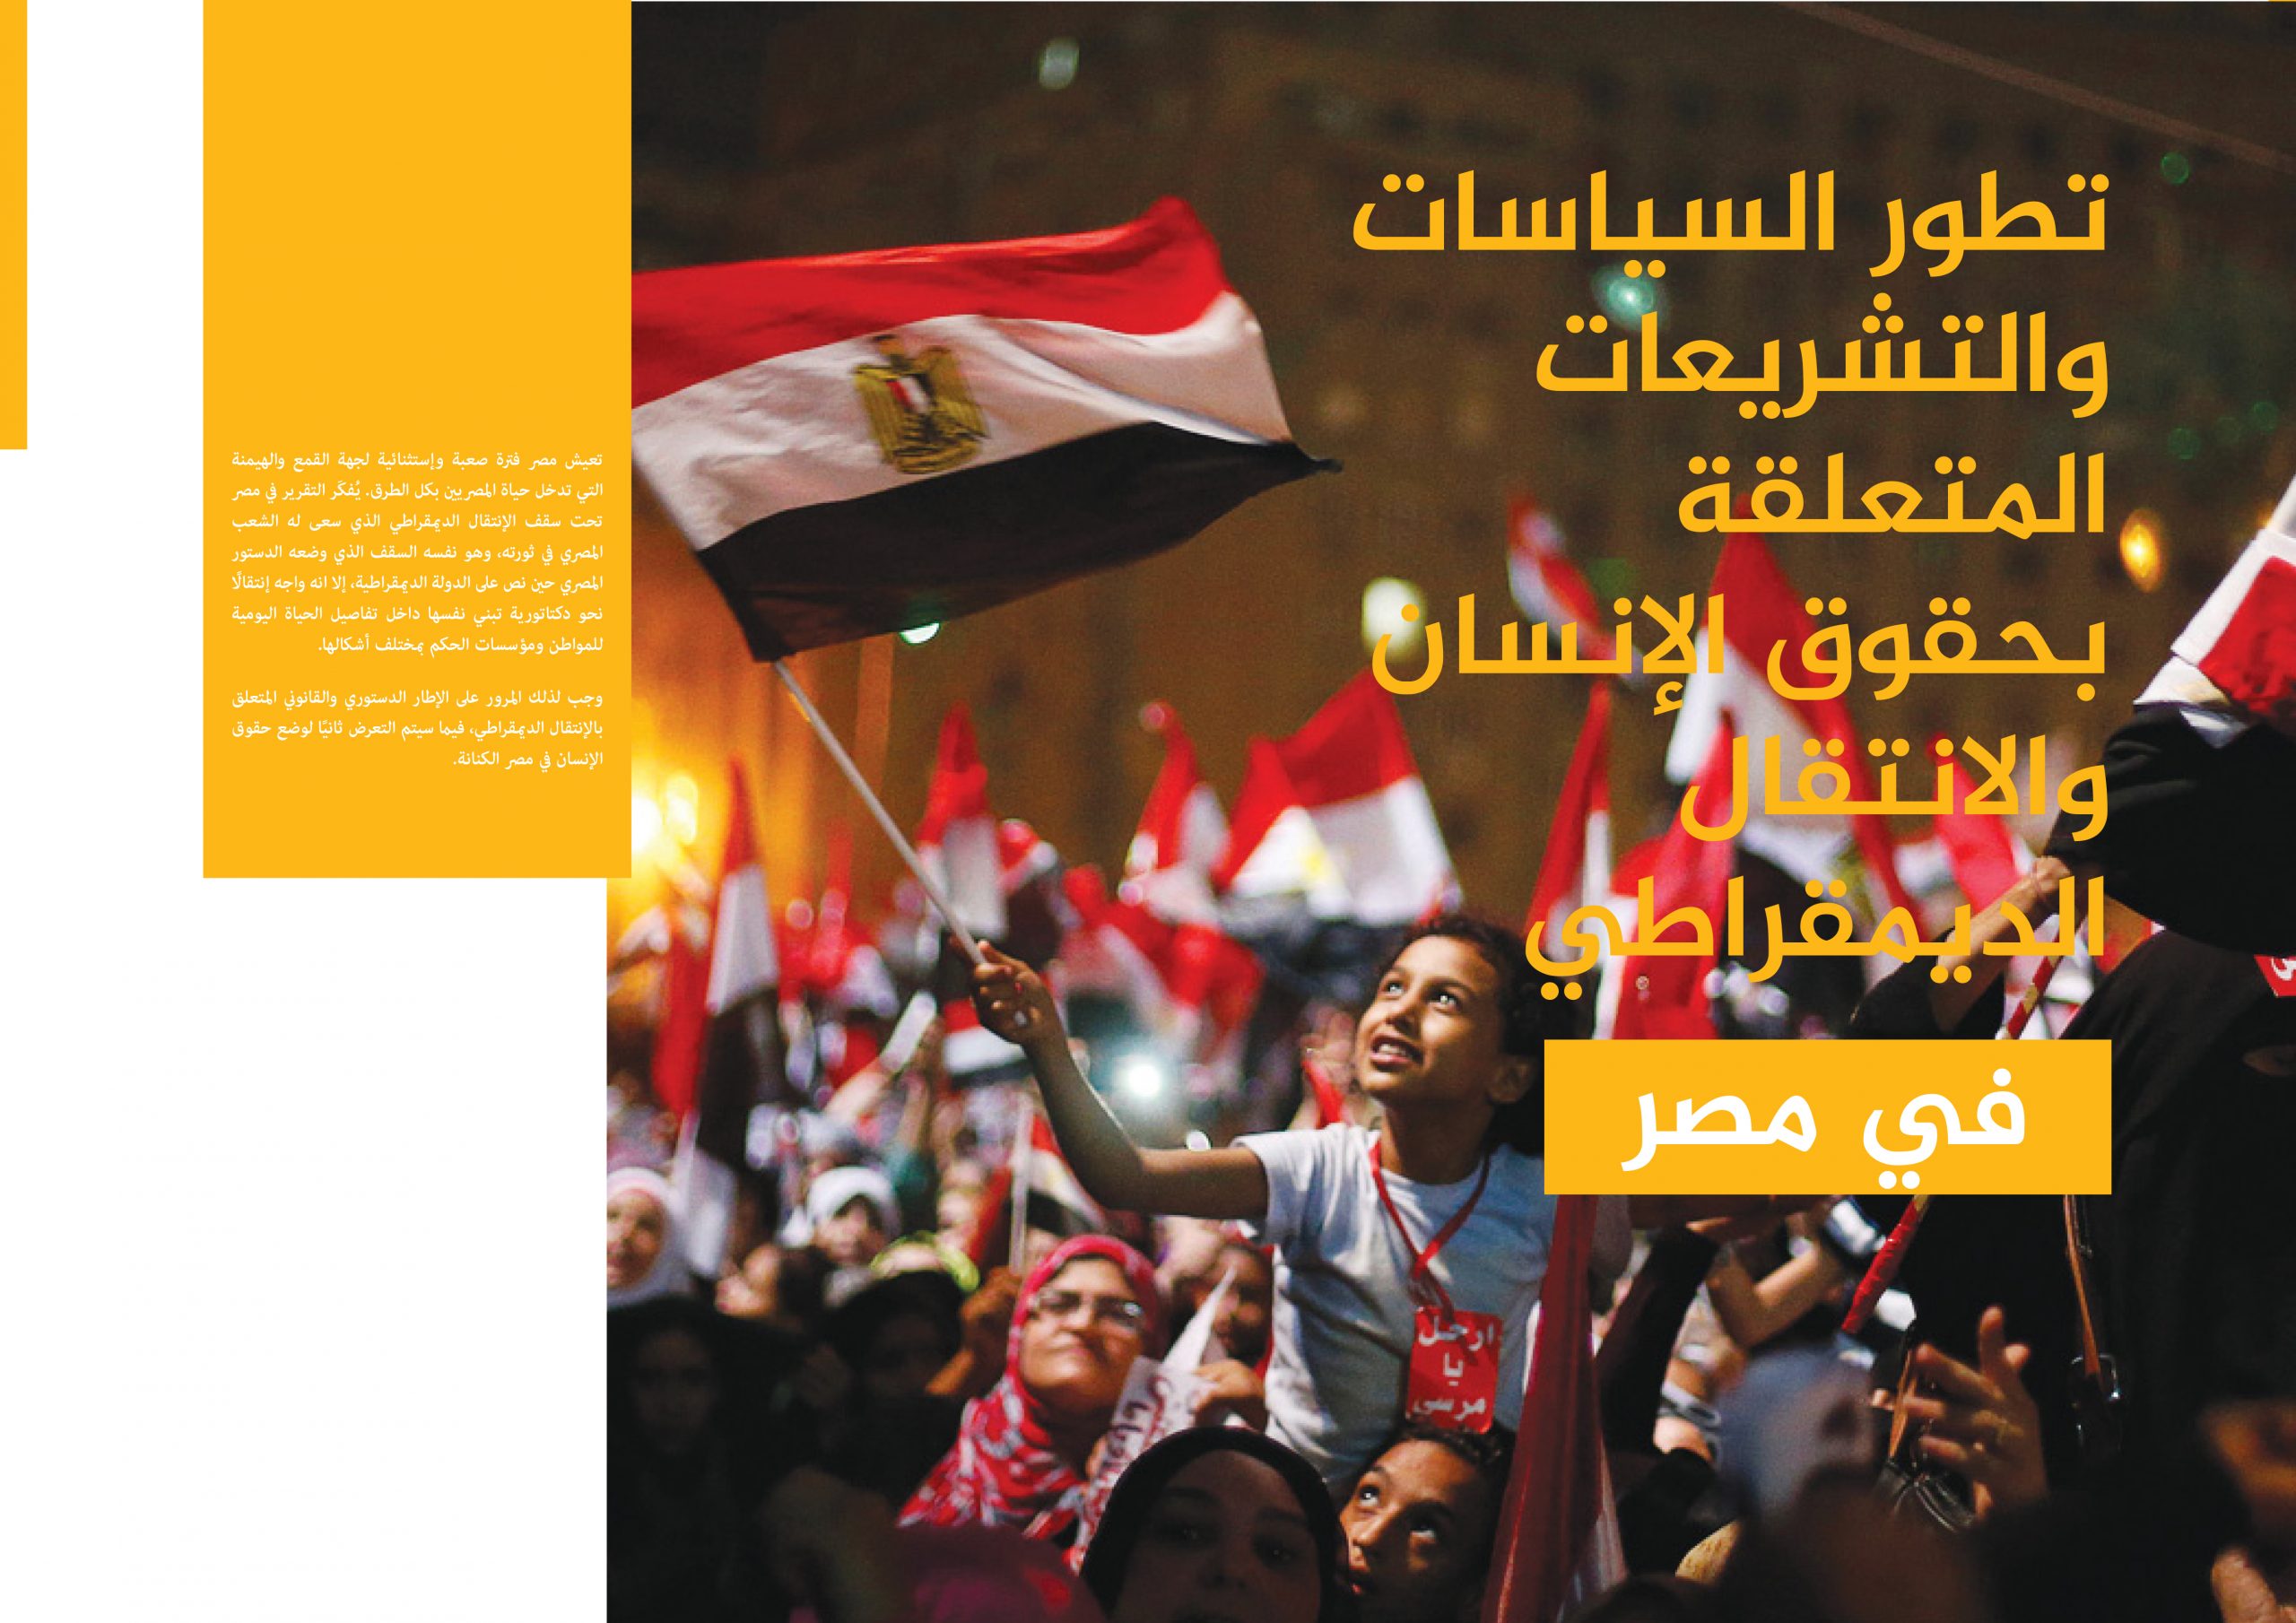 تطور السياسات والتشريعات املتعلقة بحقوق الإنسان والإنتقال الديمقراطي في مصر (التقرير نصف السنوي )